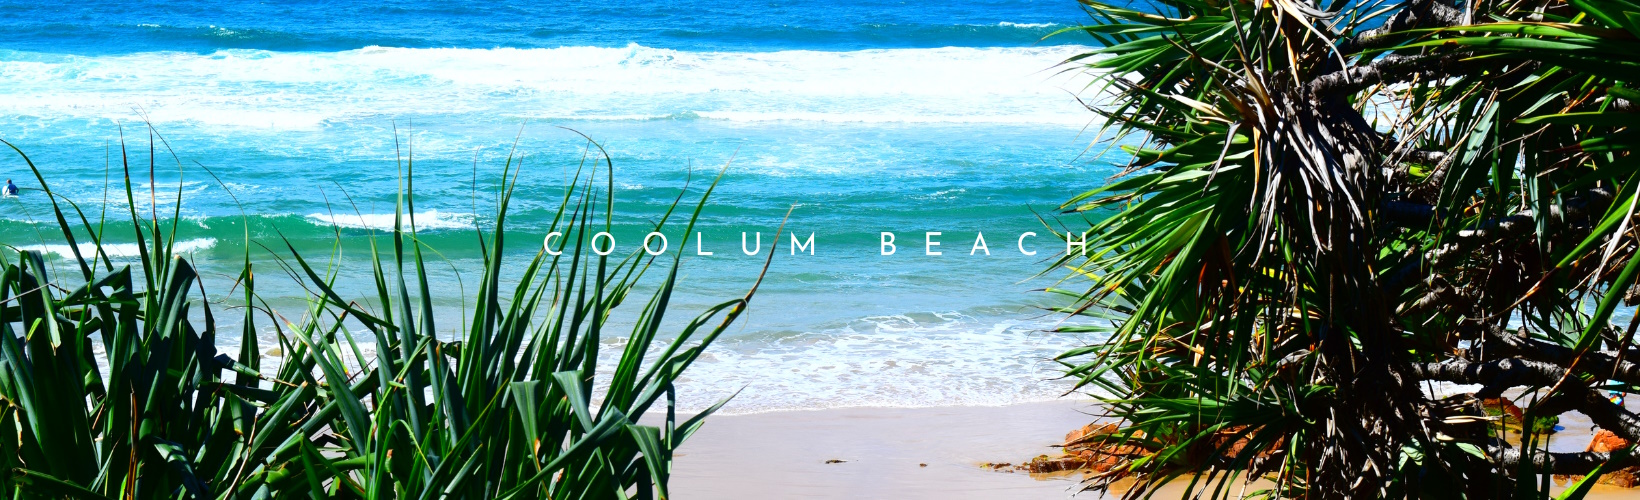 Coolum Beach